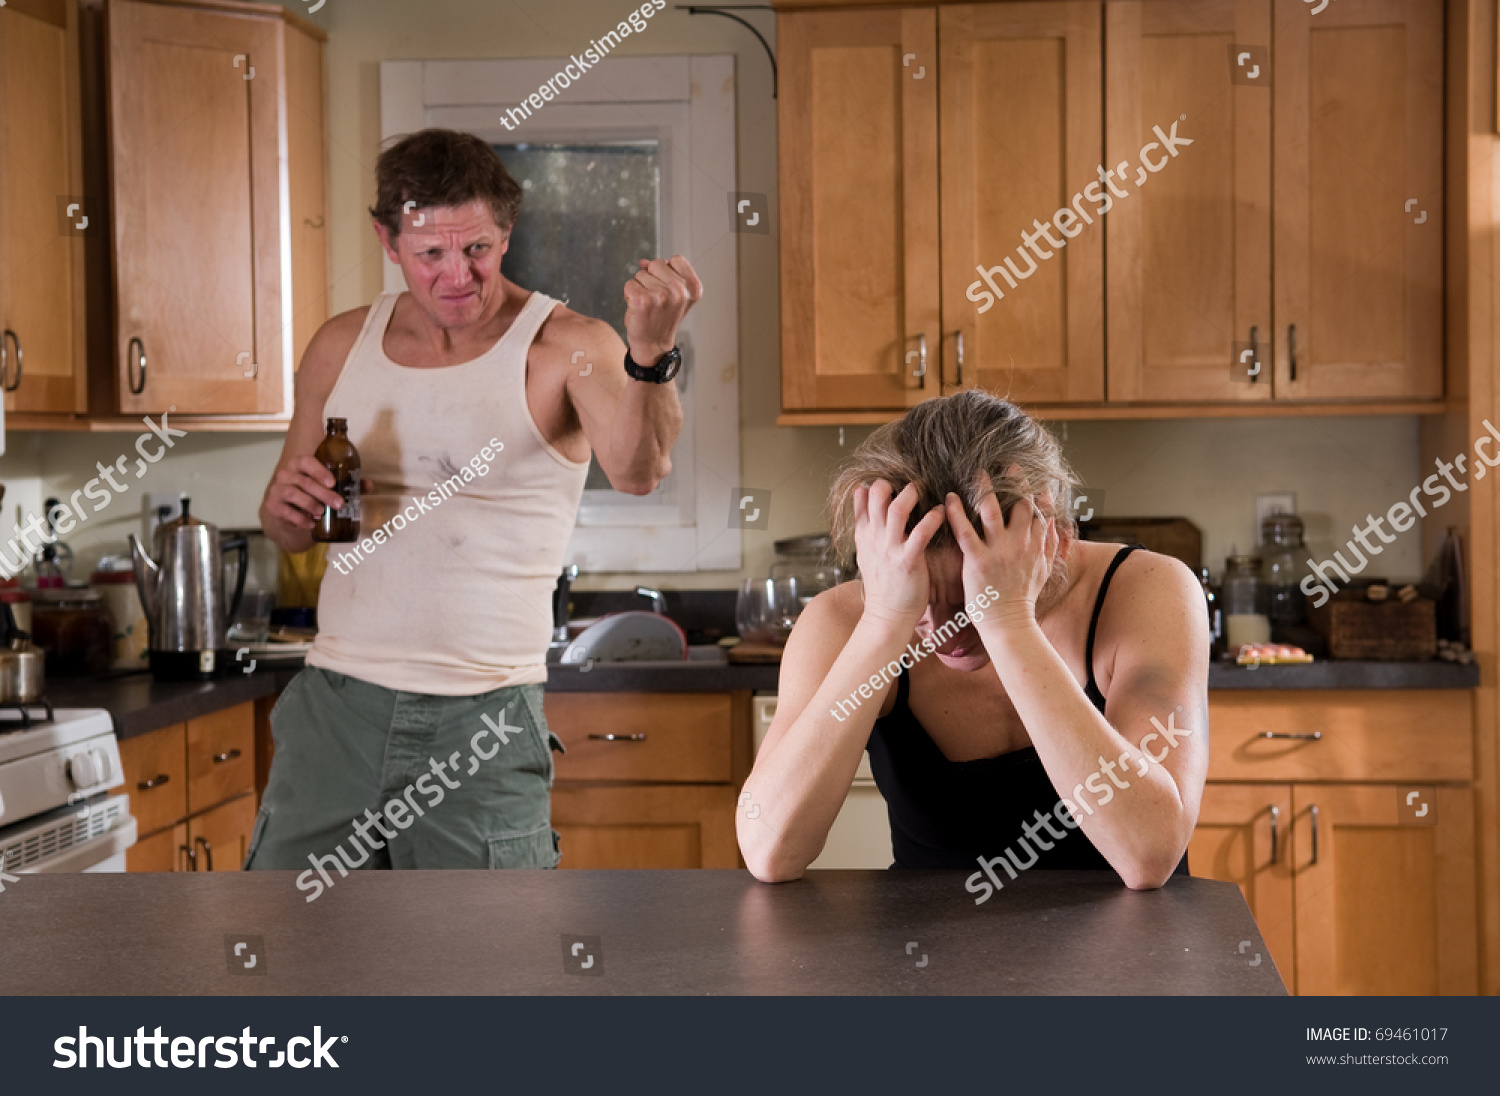 Пьющий муж изменил. Мужчина и женщина на кухне. Муж и жена ссорятся на кухне. Семейная ссора на кухне. Ссора на кухне мужа и жены.